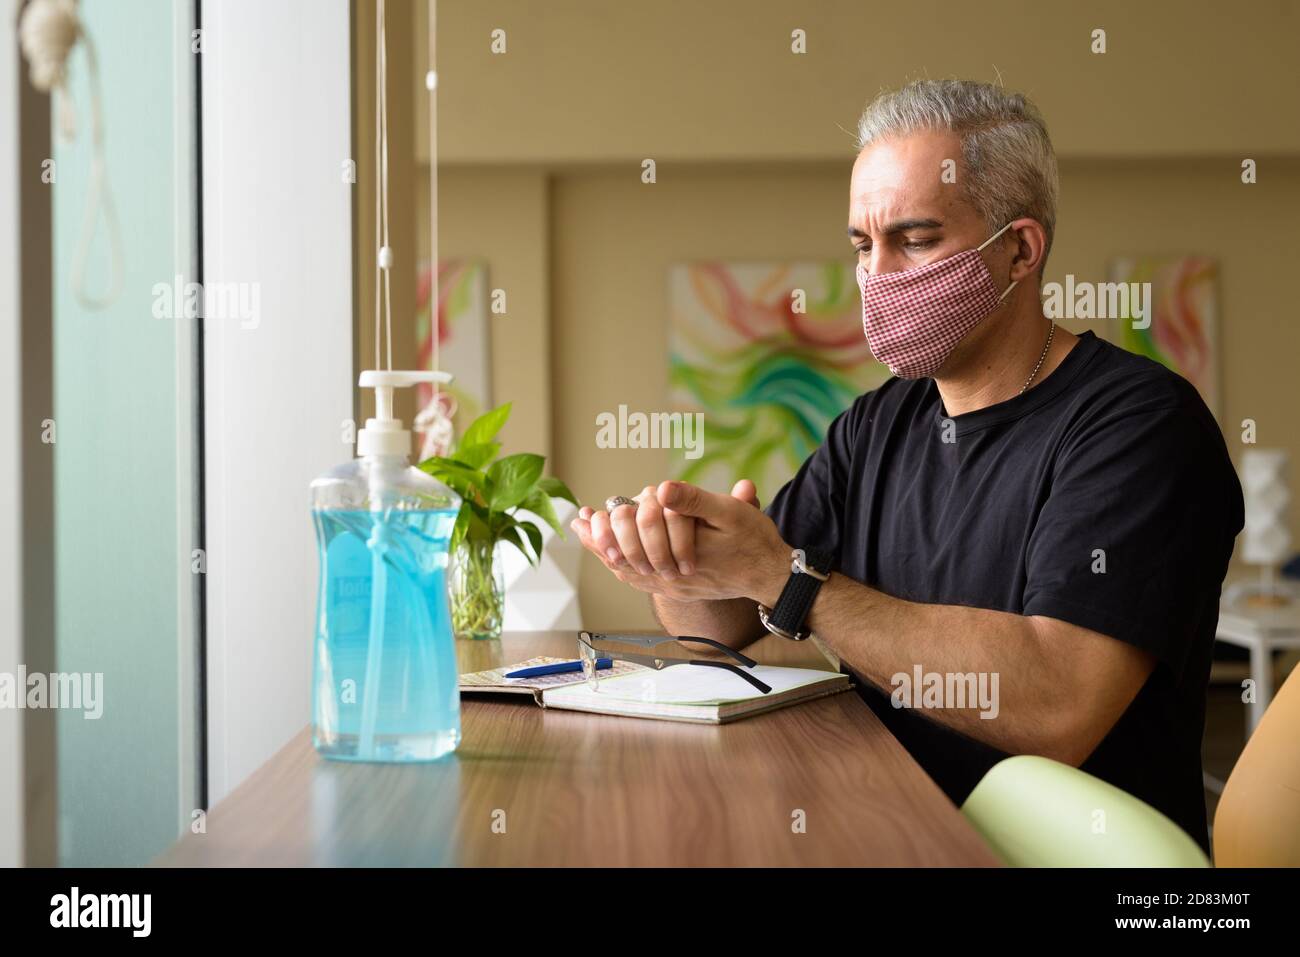 Ritratto di uomo persiano con maschera utilizzando disinfettante a mano a. la biblioteca Foto Stock